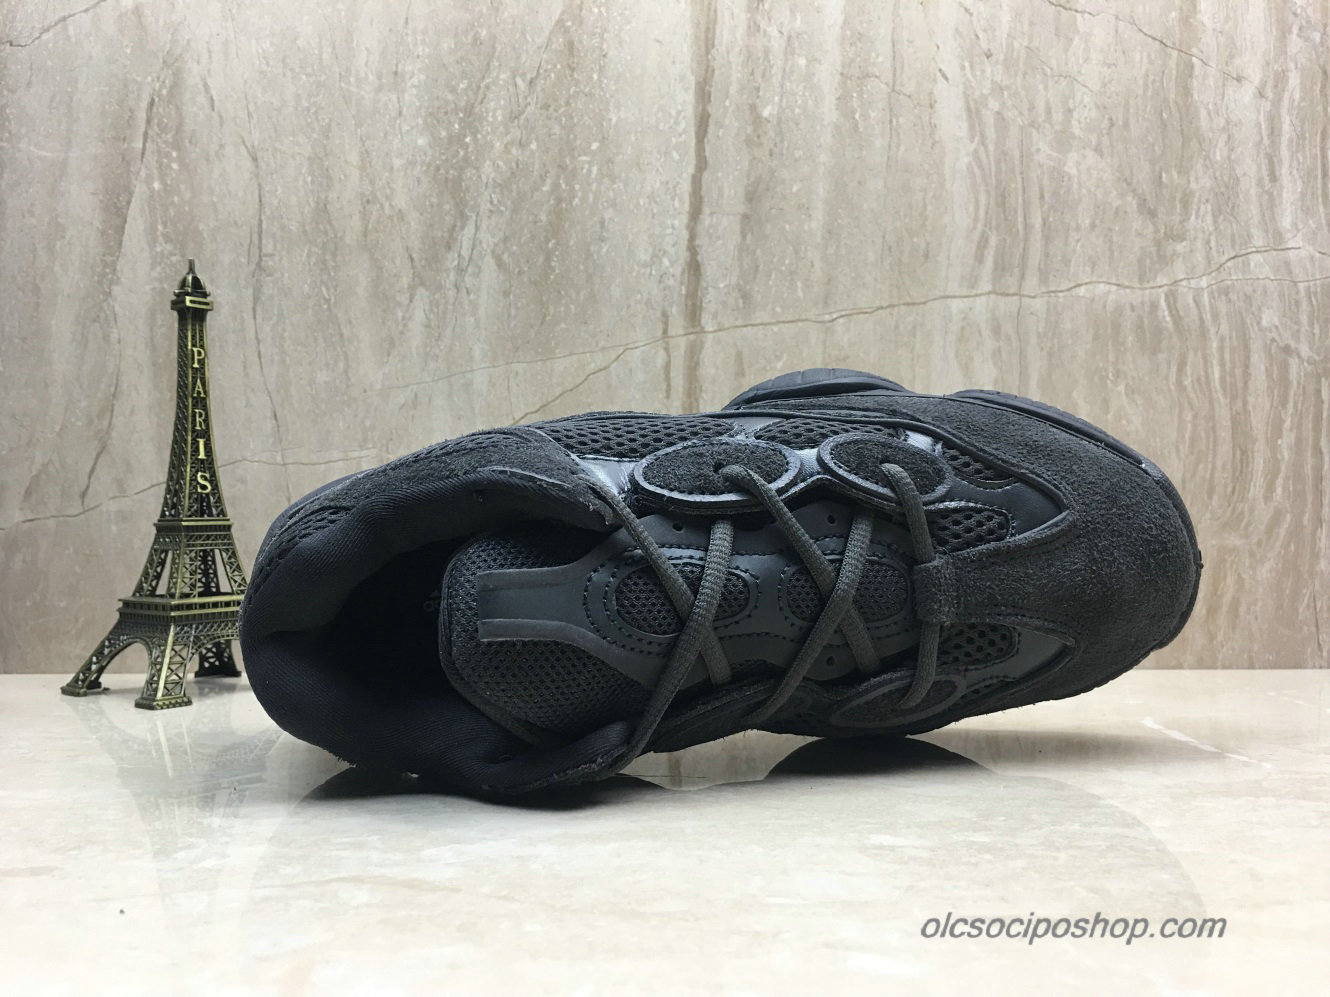 Adidas Yeezy Desert Rat 500 Blush Fekete Cipők (F36640) - Kattintásra bezárul